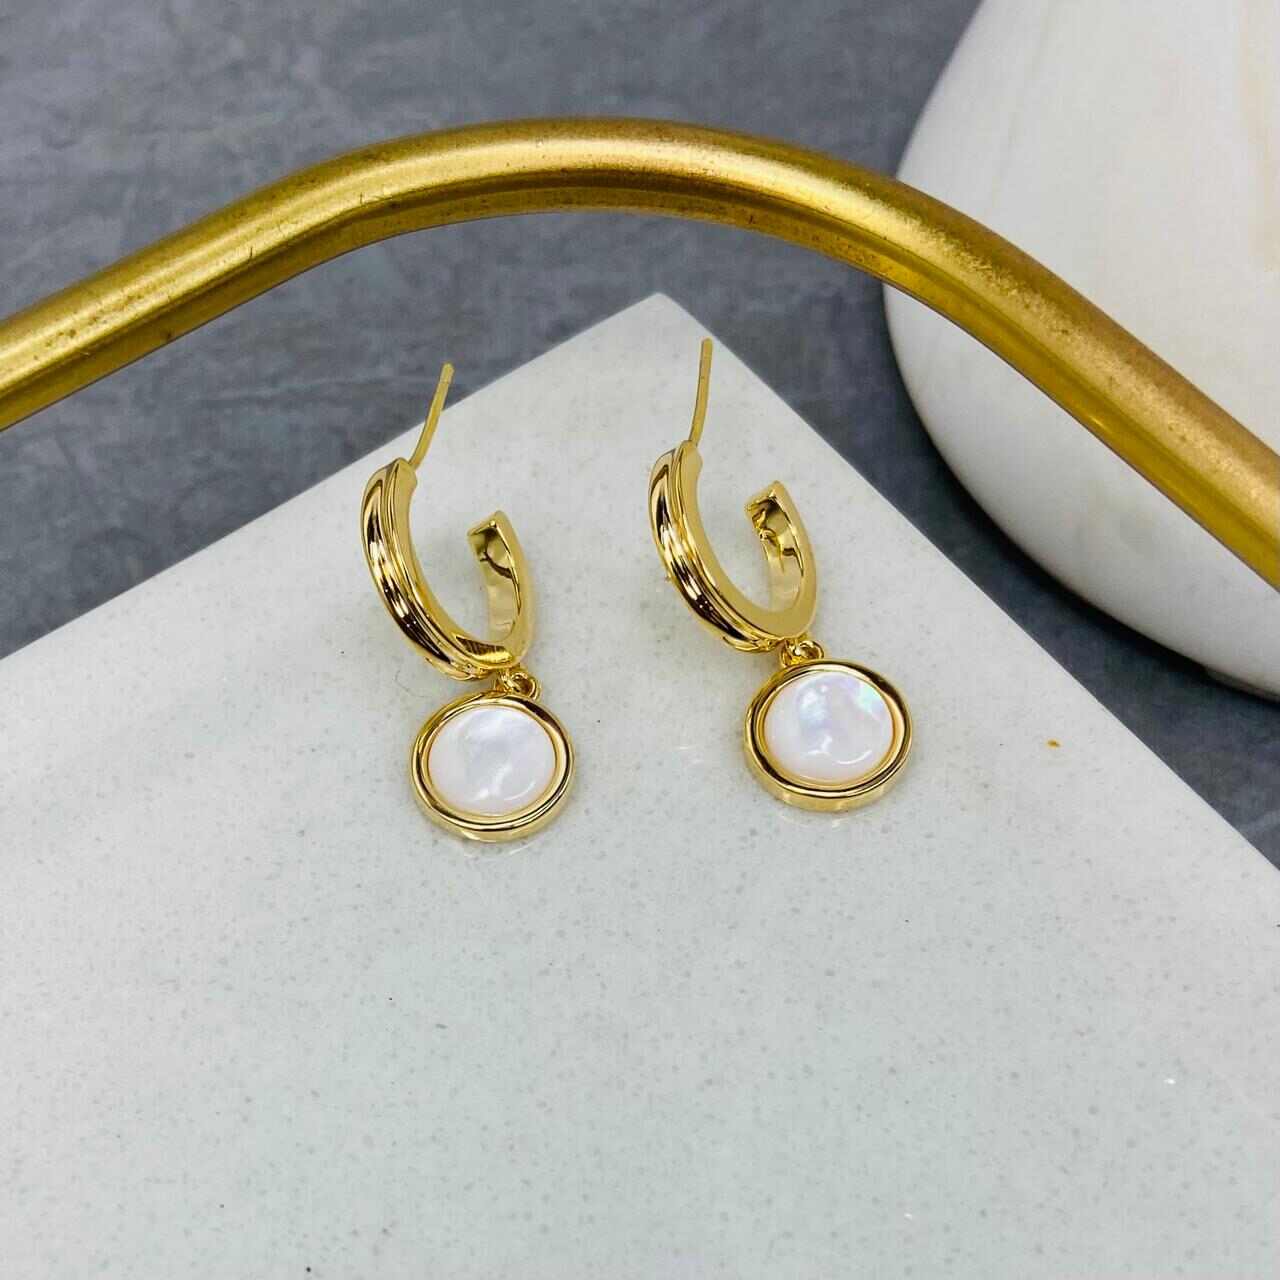 White Gold Earrings